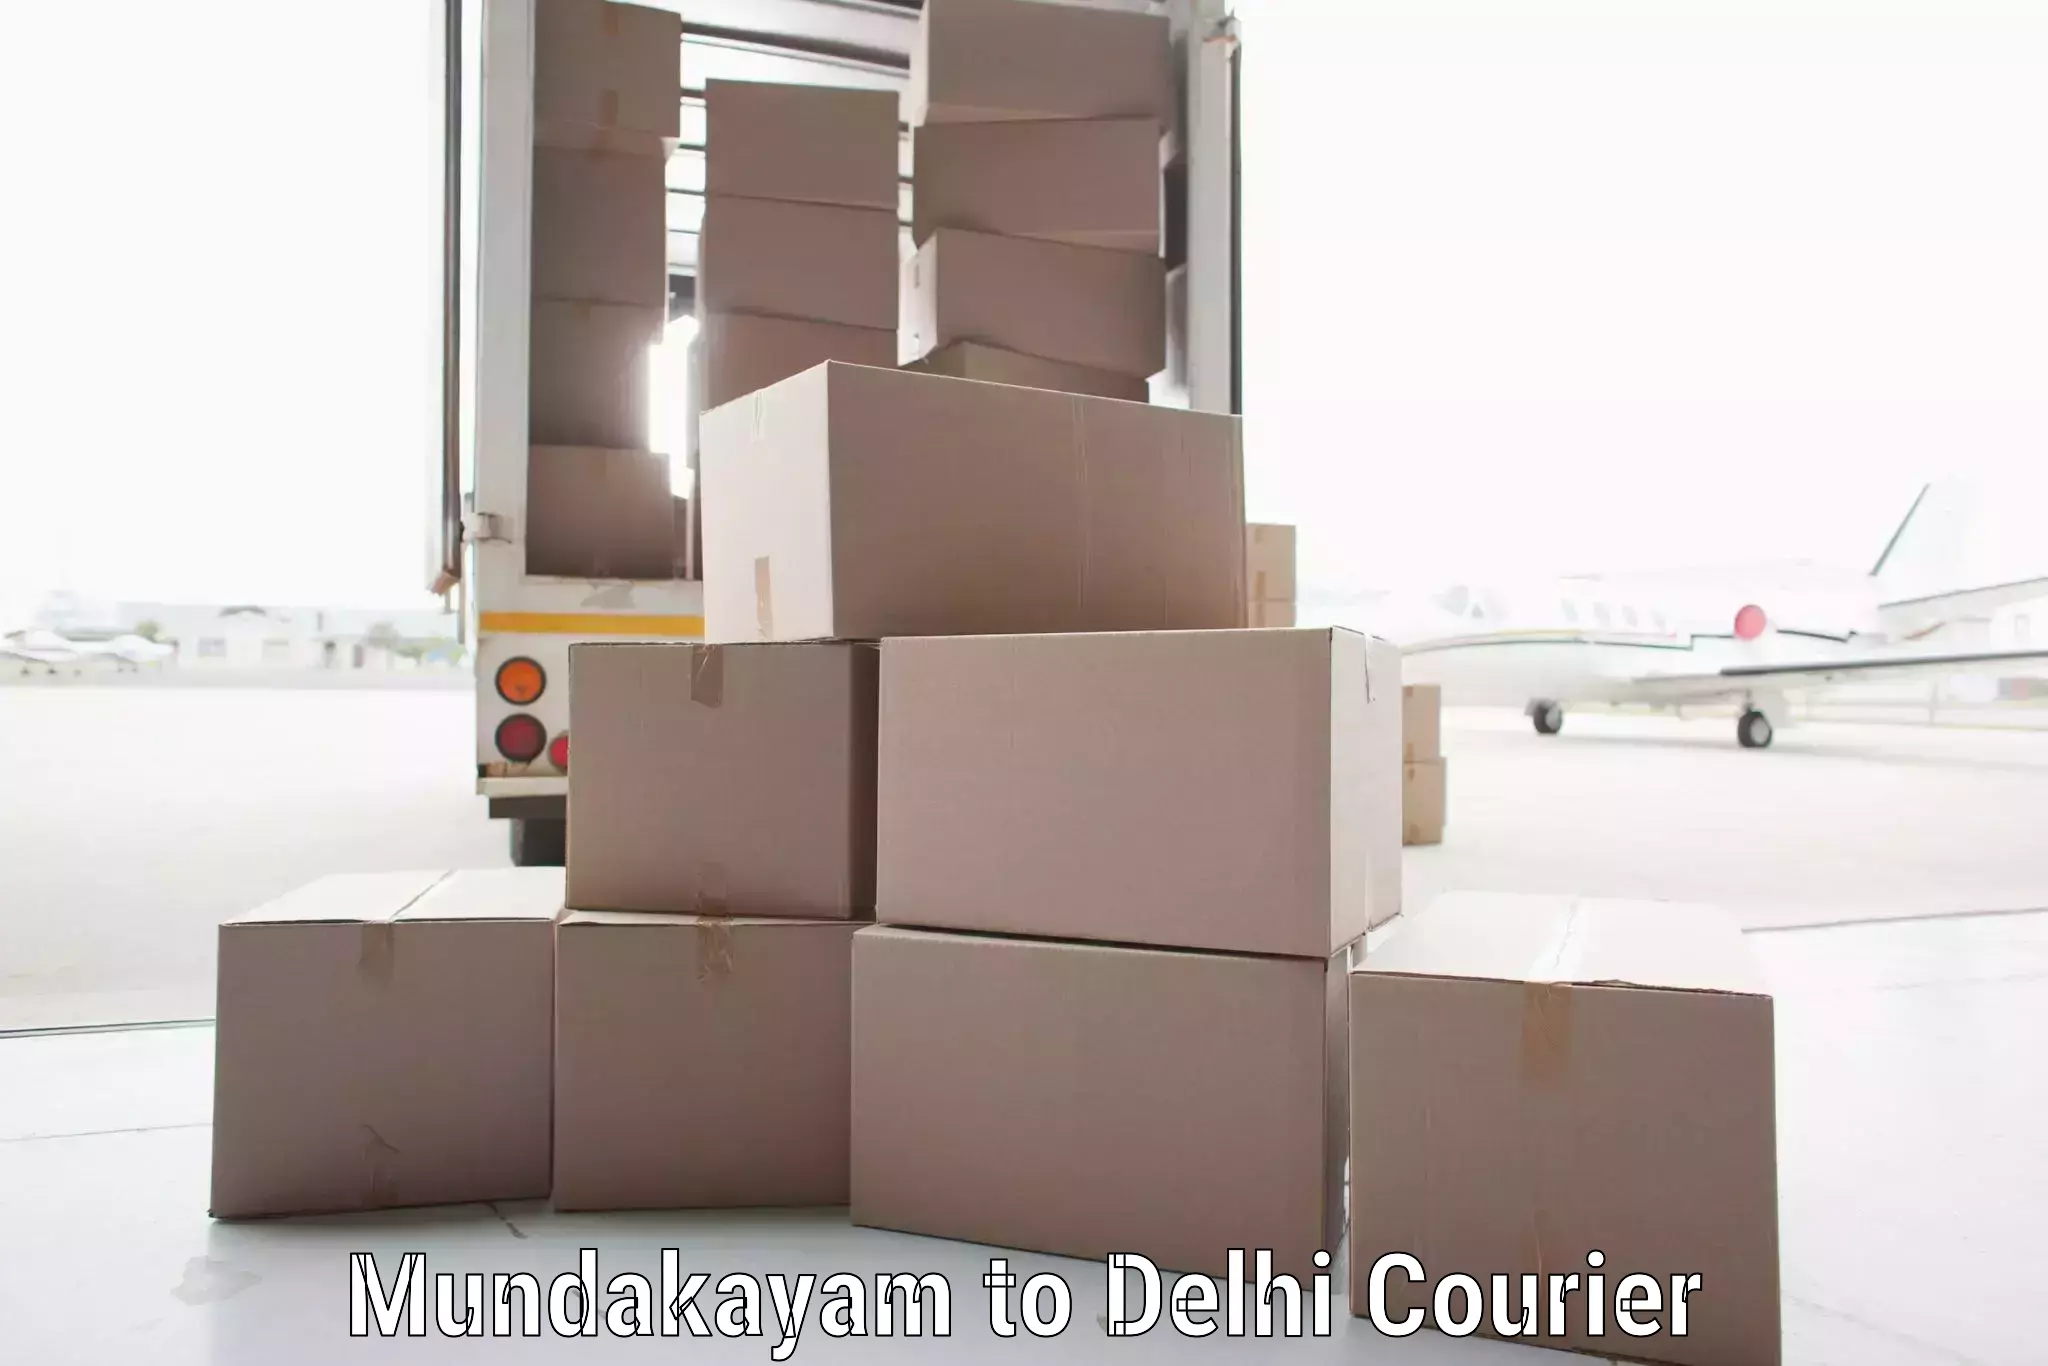 International courier networks Mundakayam to Delhi